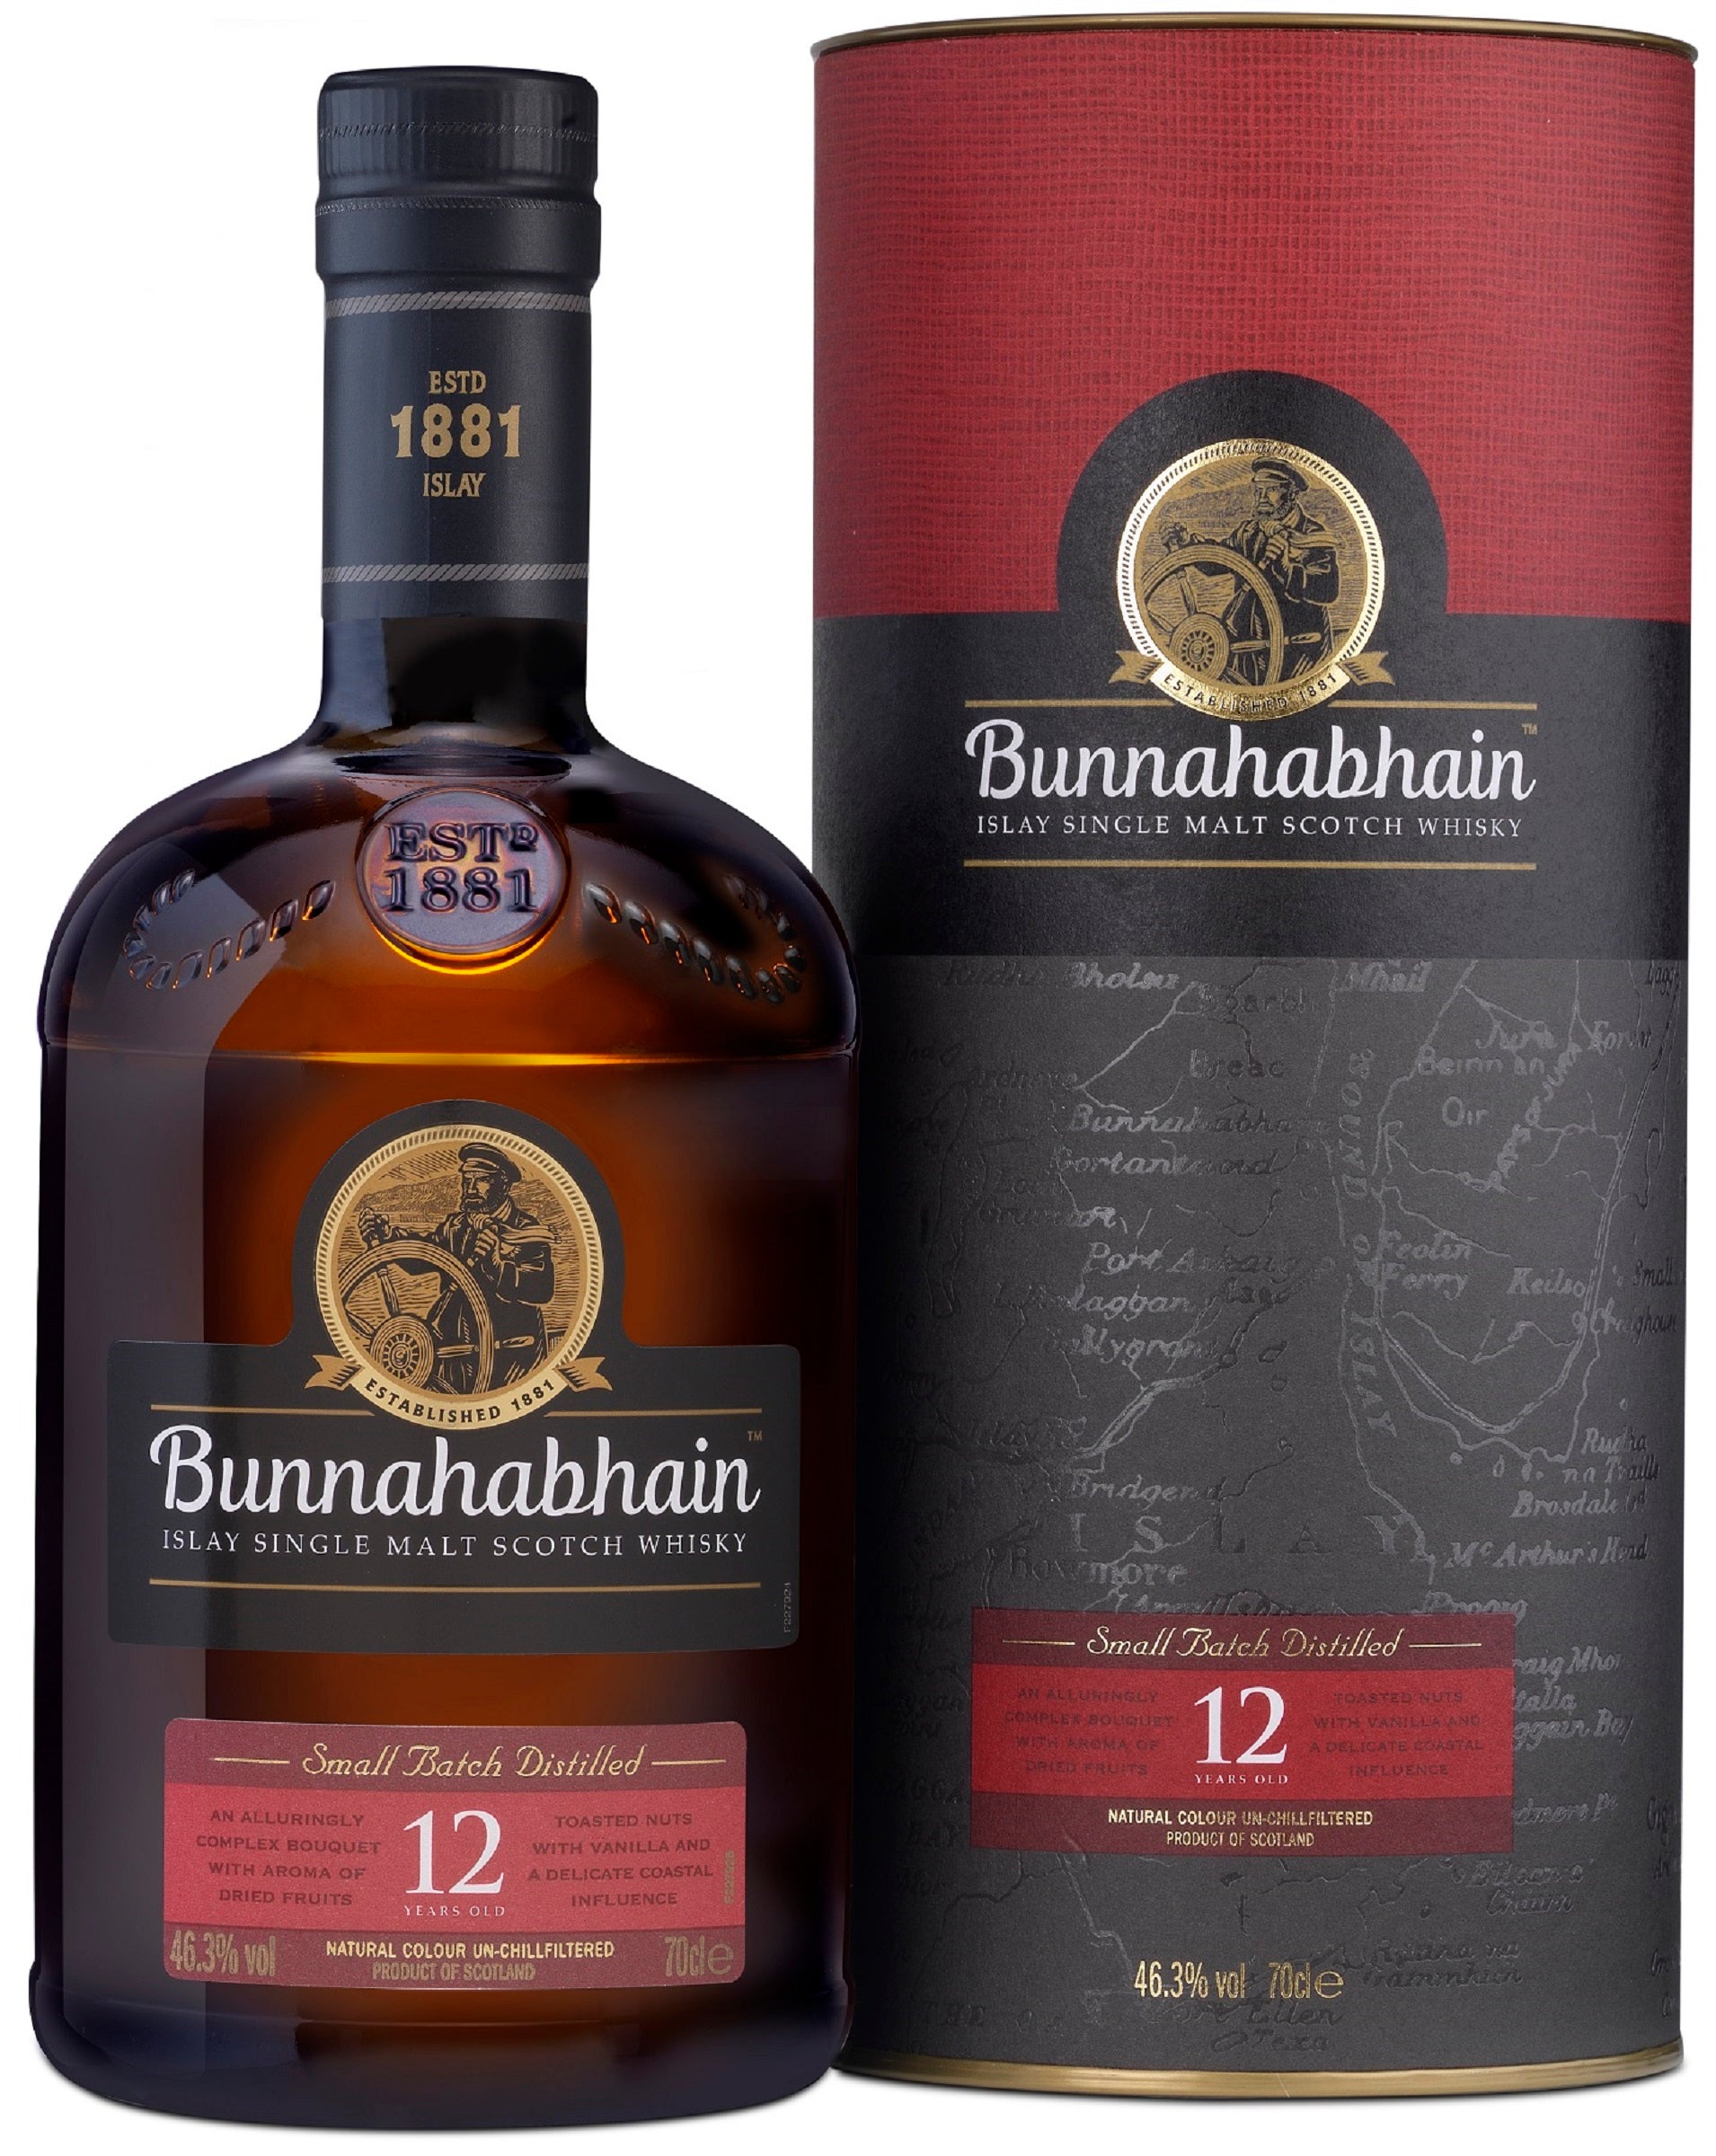 Bottle of Bunnahabhain 12-Year-Old Islay Single Malt Scotch Whisky, 46.3% - The Spirits Room